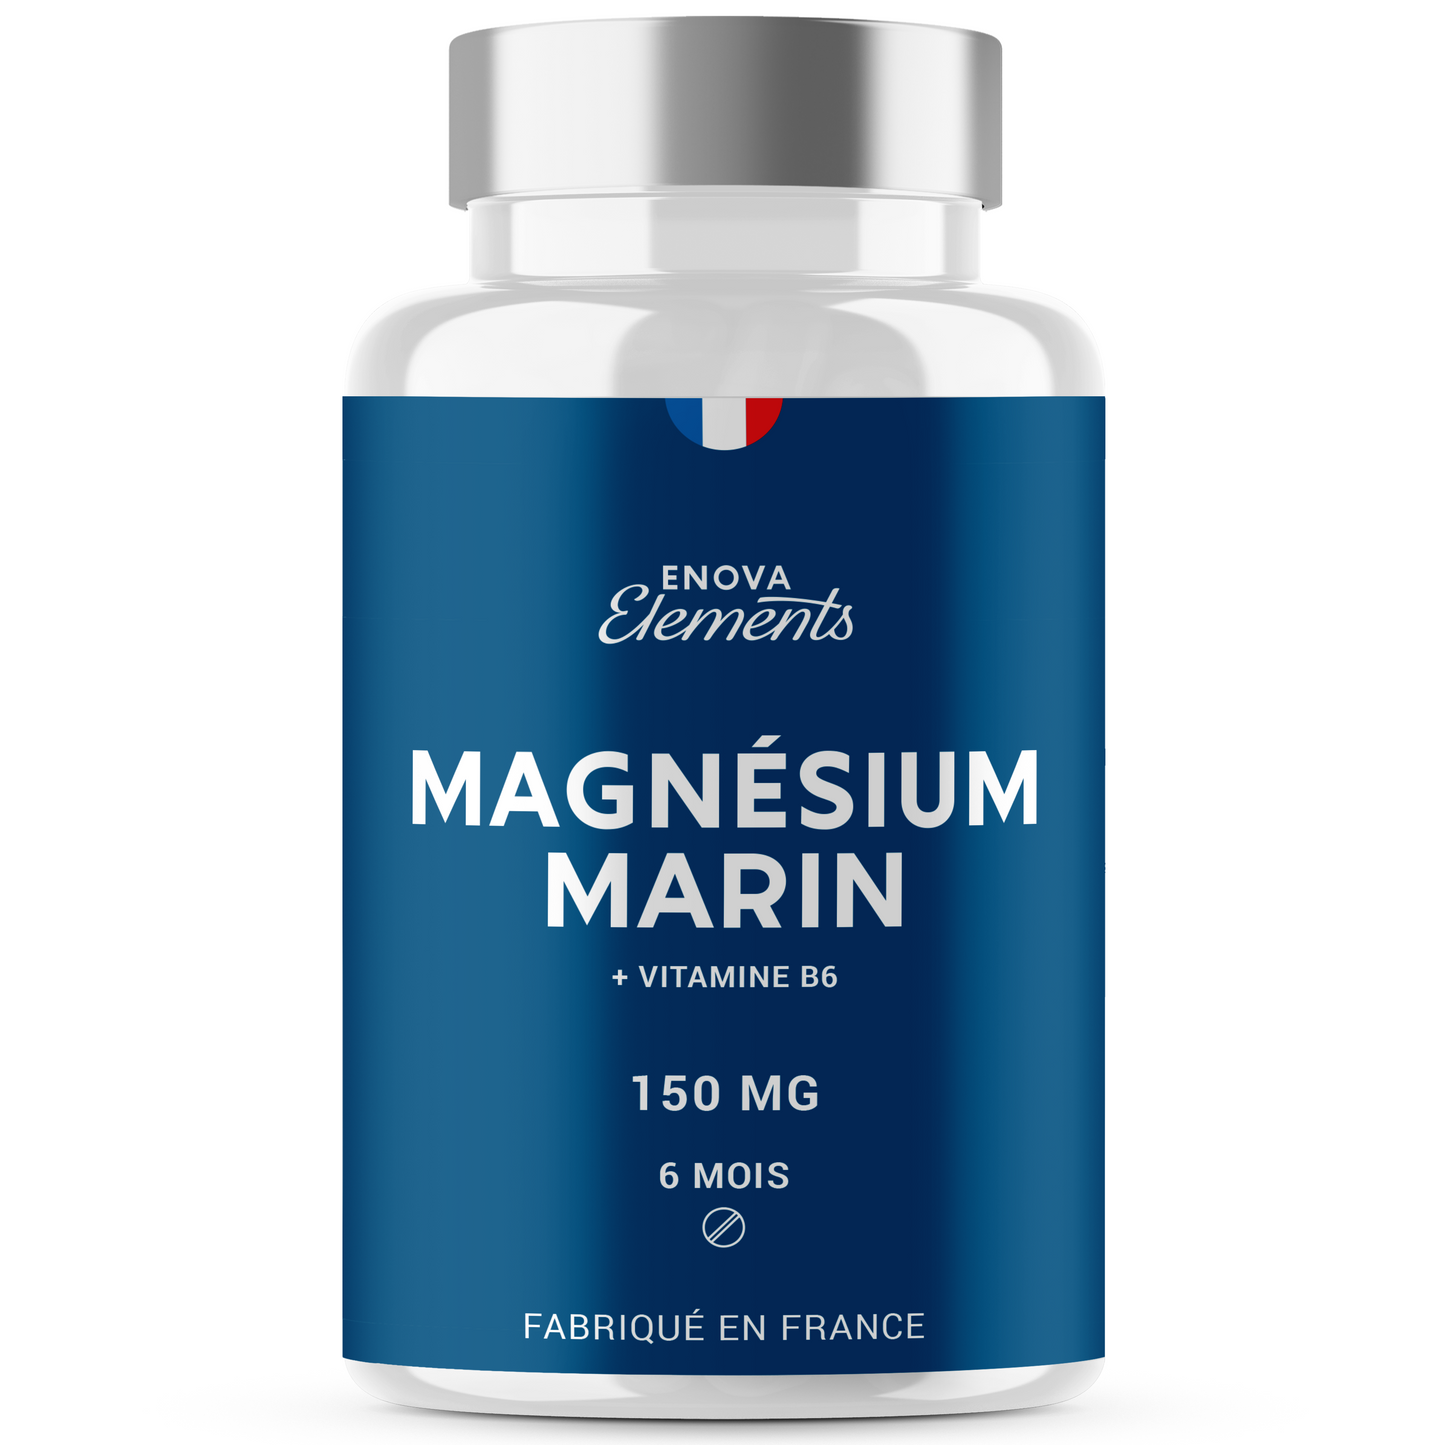 MAGNÉSIUM MARIN + Vitamine B6 - Contre la fatigue, Anti-stress, Récupération musculaire